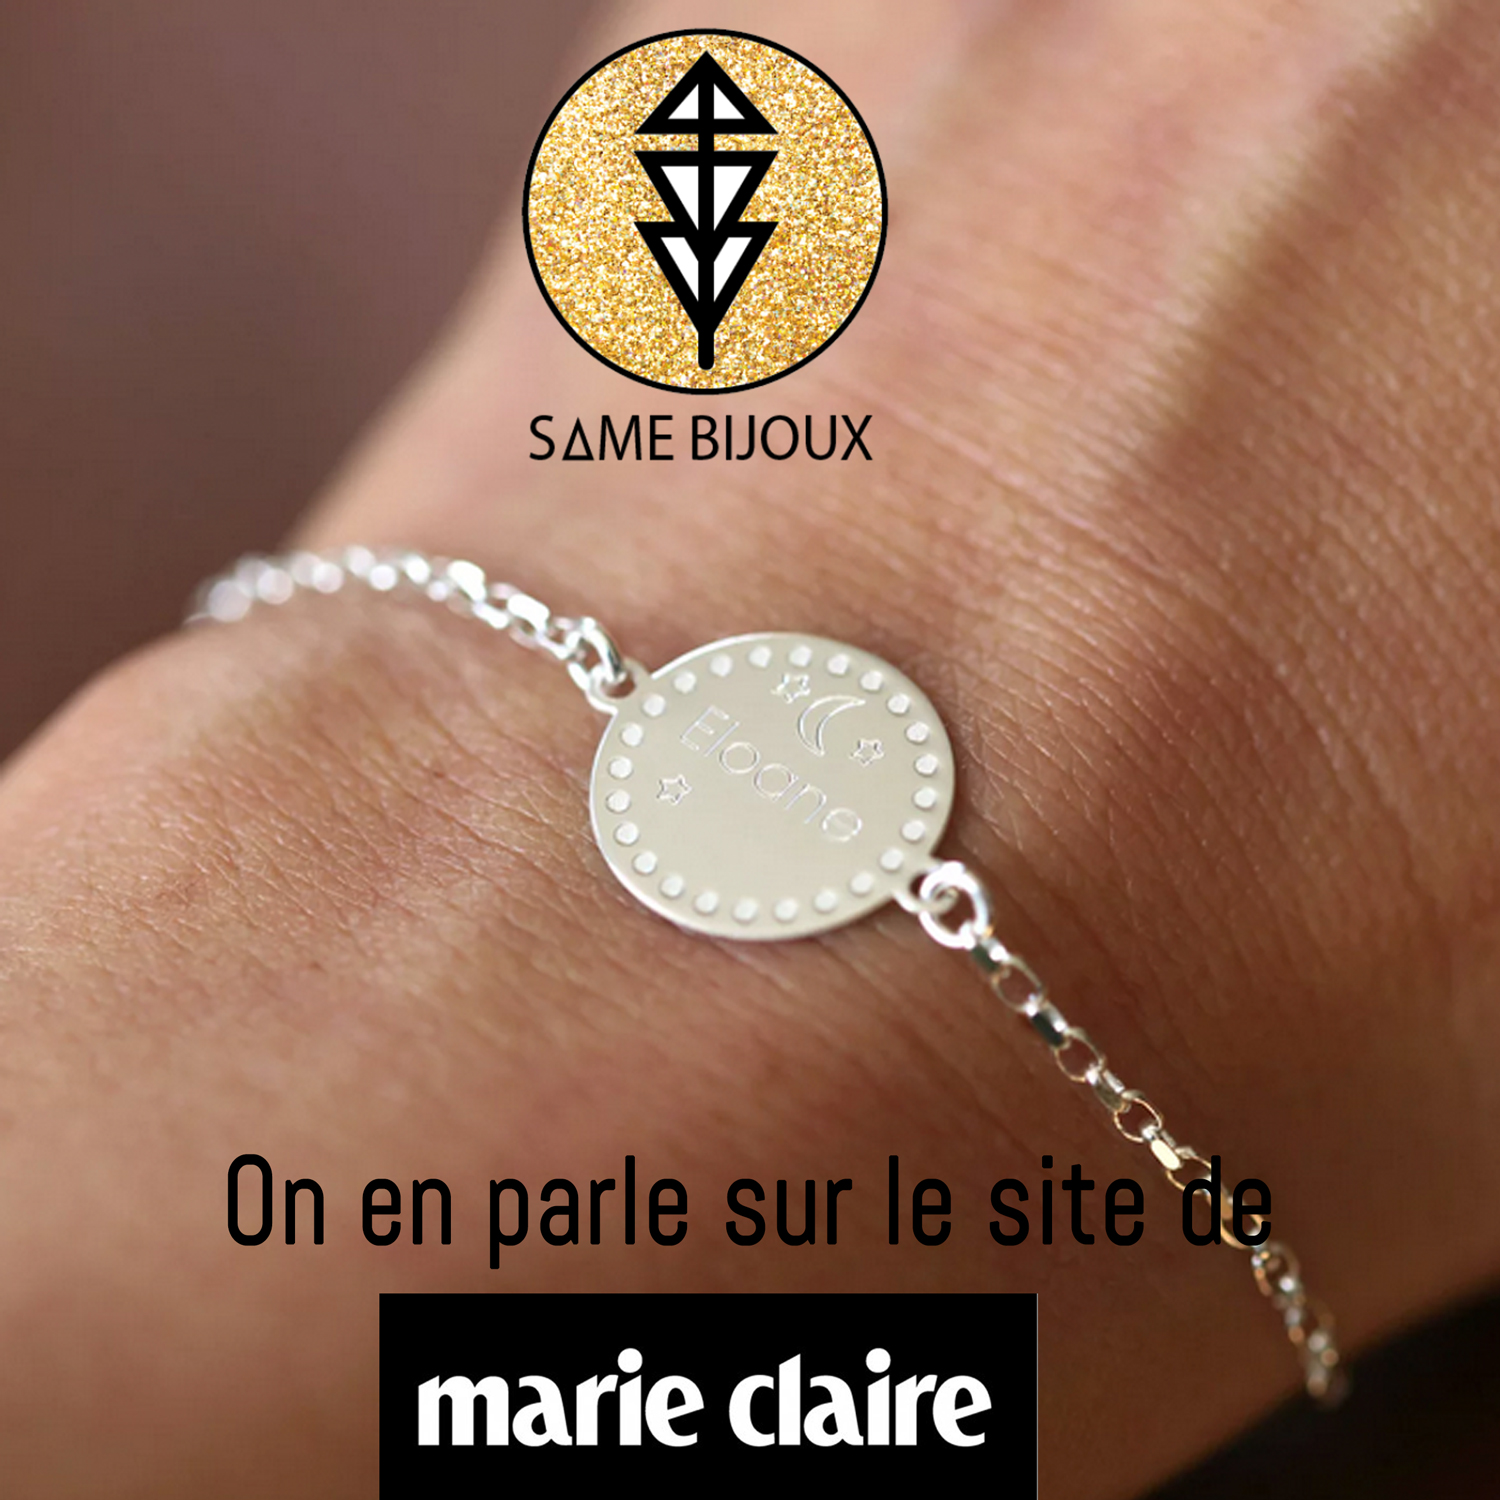 Marie Claire - Same Bijoux - Maman Bébé - adresses incontournables - cadeaux de naissance